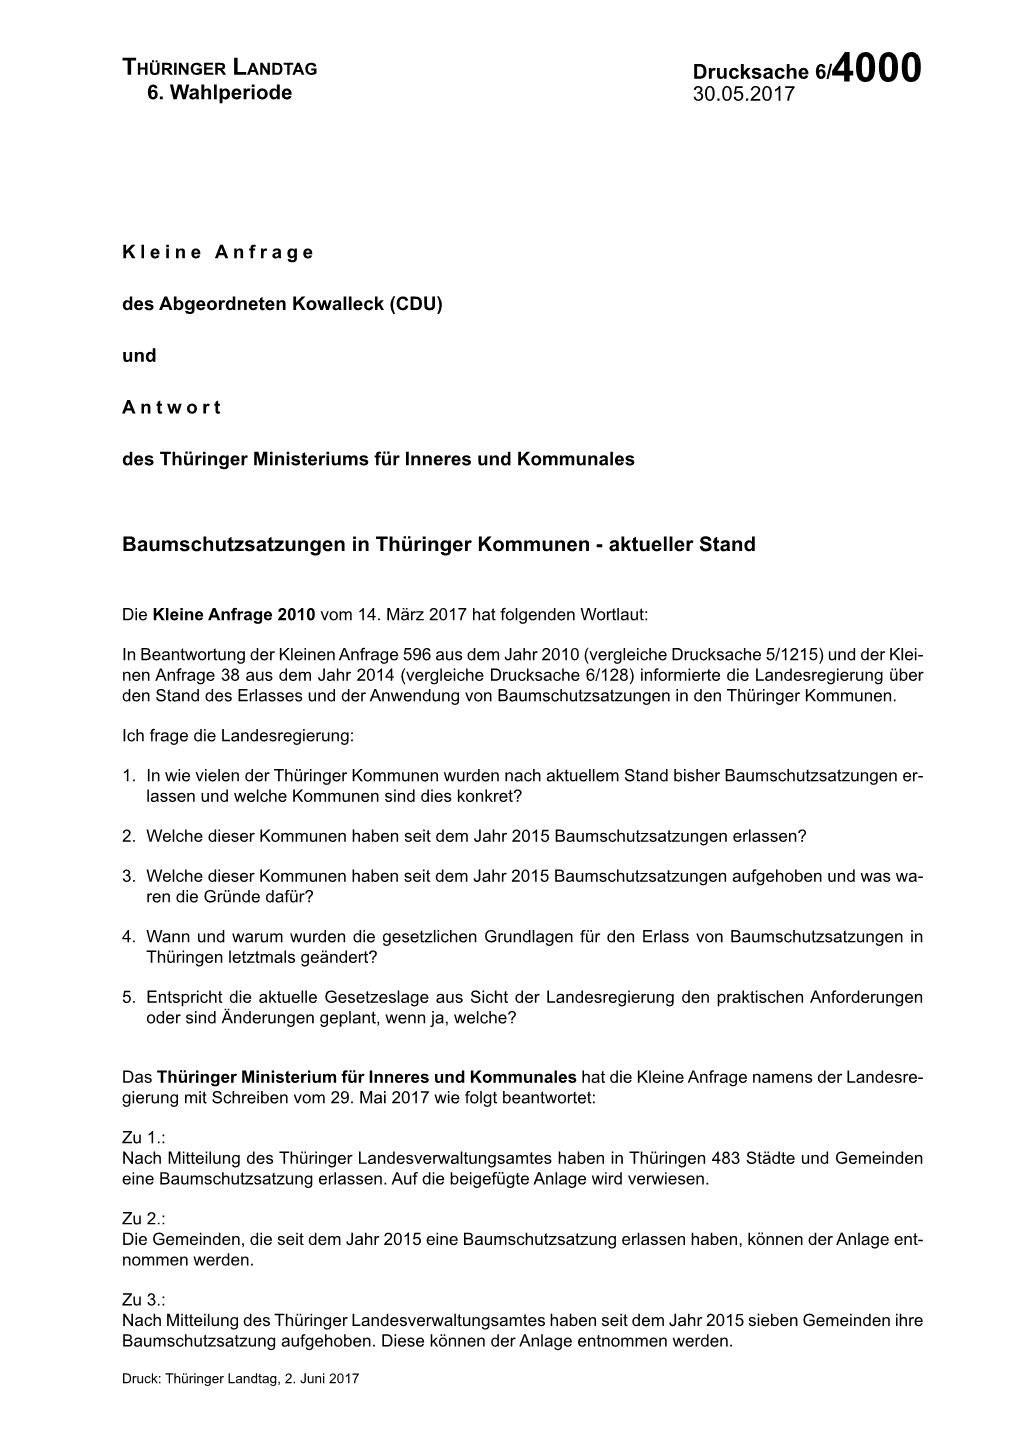 Antwort Auf Die Kleine Anfrage 2010 Des Abgeordneten Kowalleck (CDU)